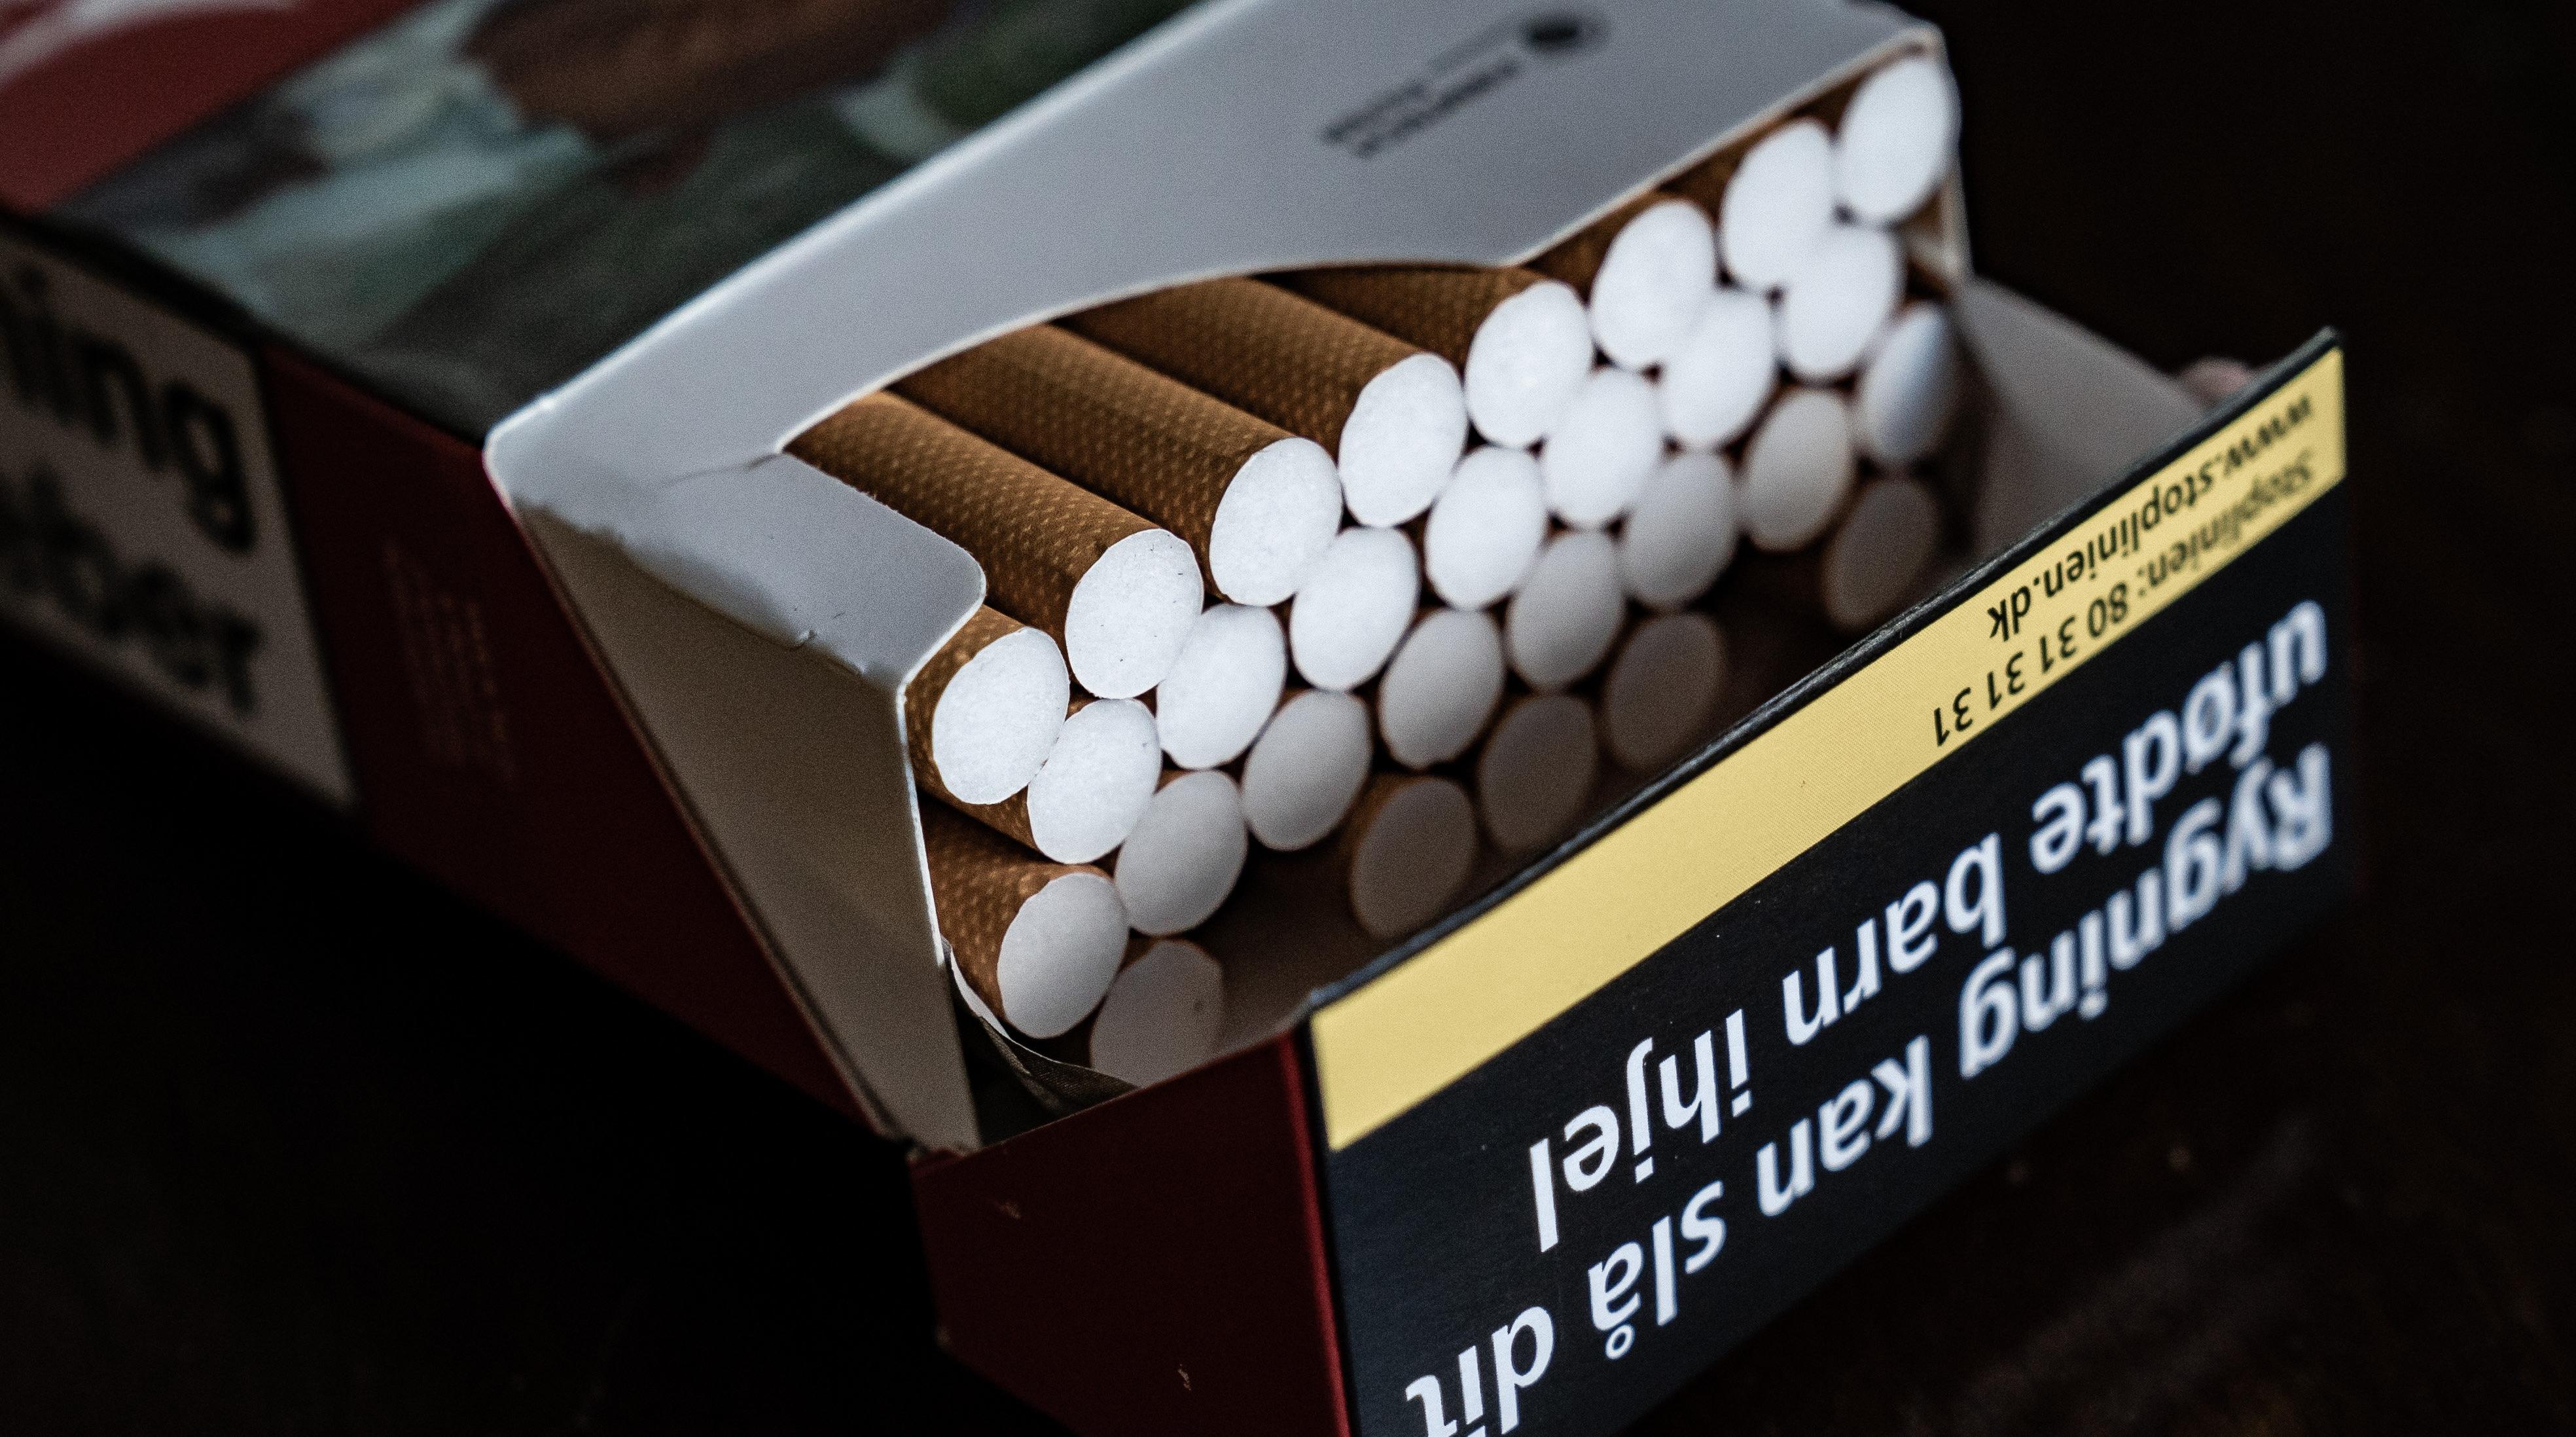 afgift giver salg cigaretter 62 år